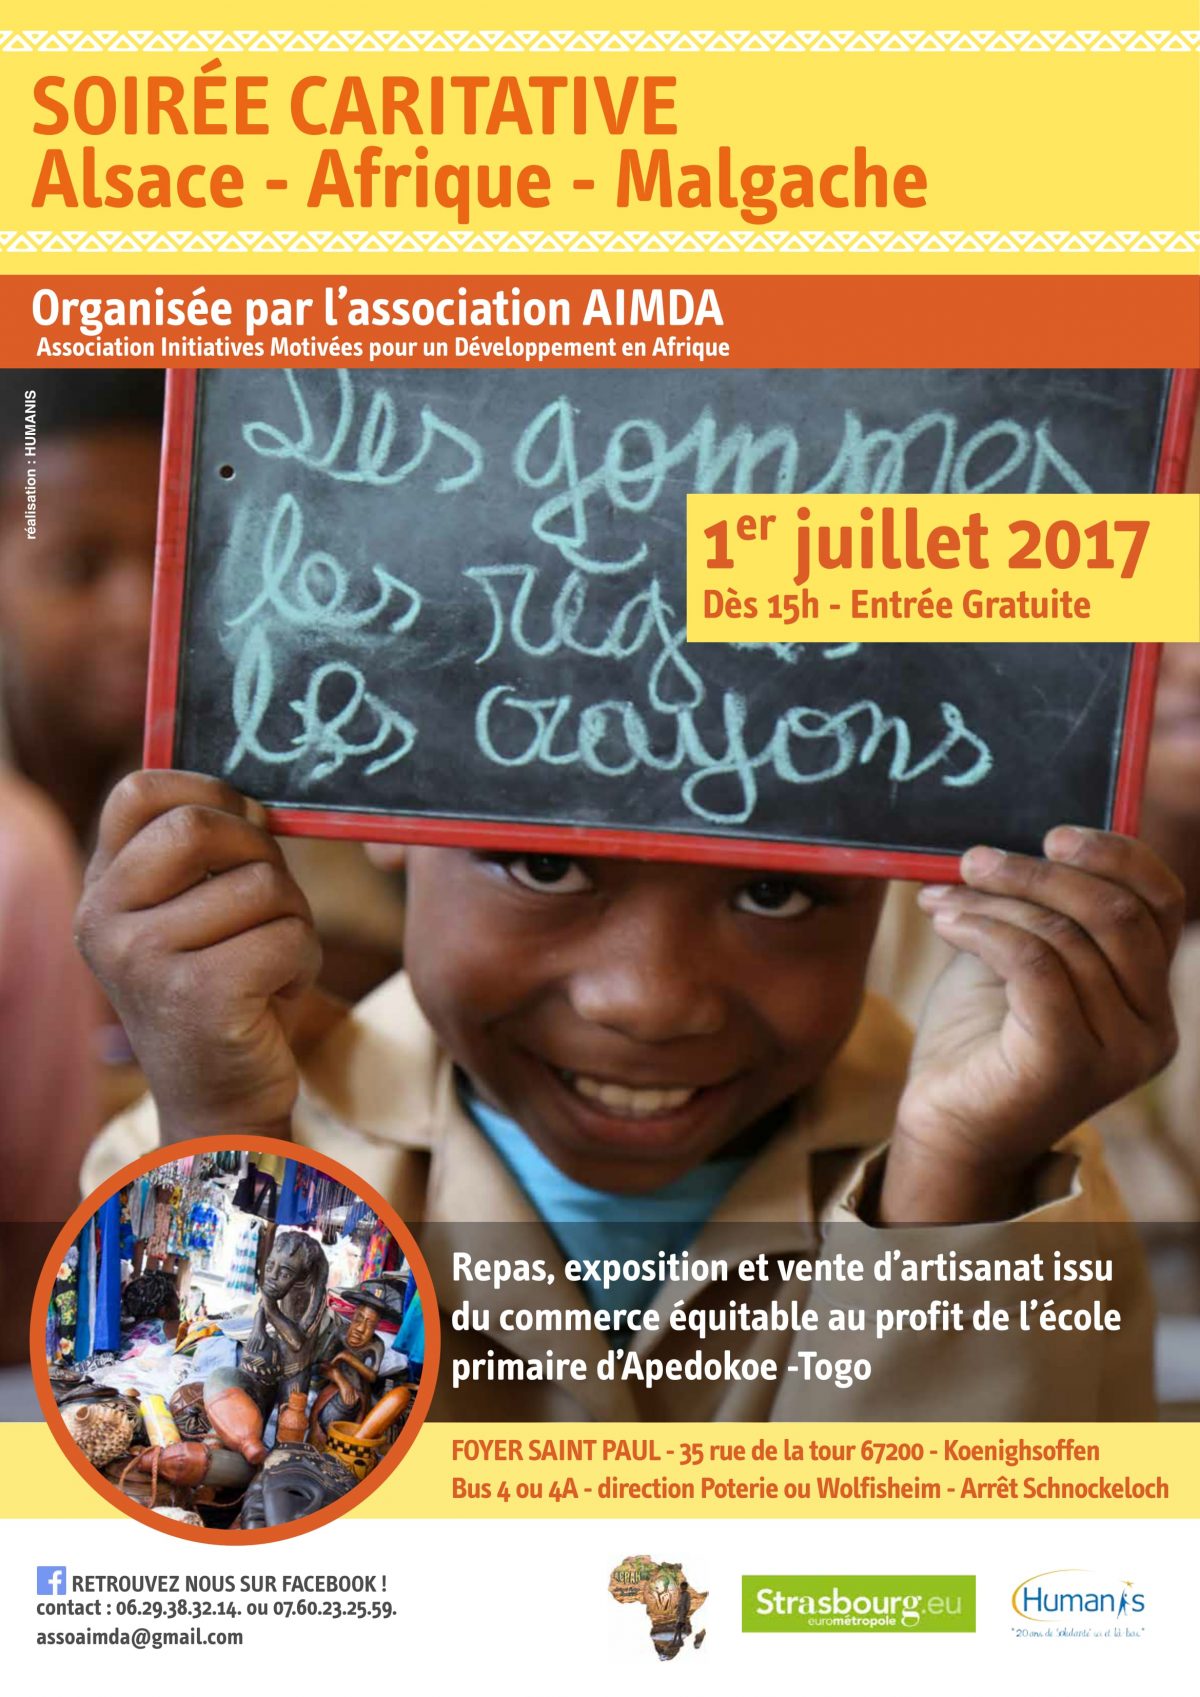 Soirée Caritative Alsac- Afrique - Malgache organisée par l'association AIMDA (Association Initiatives Motivées pour un Développement en Afrique)